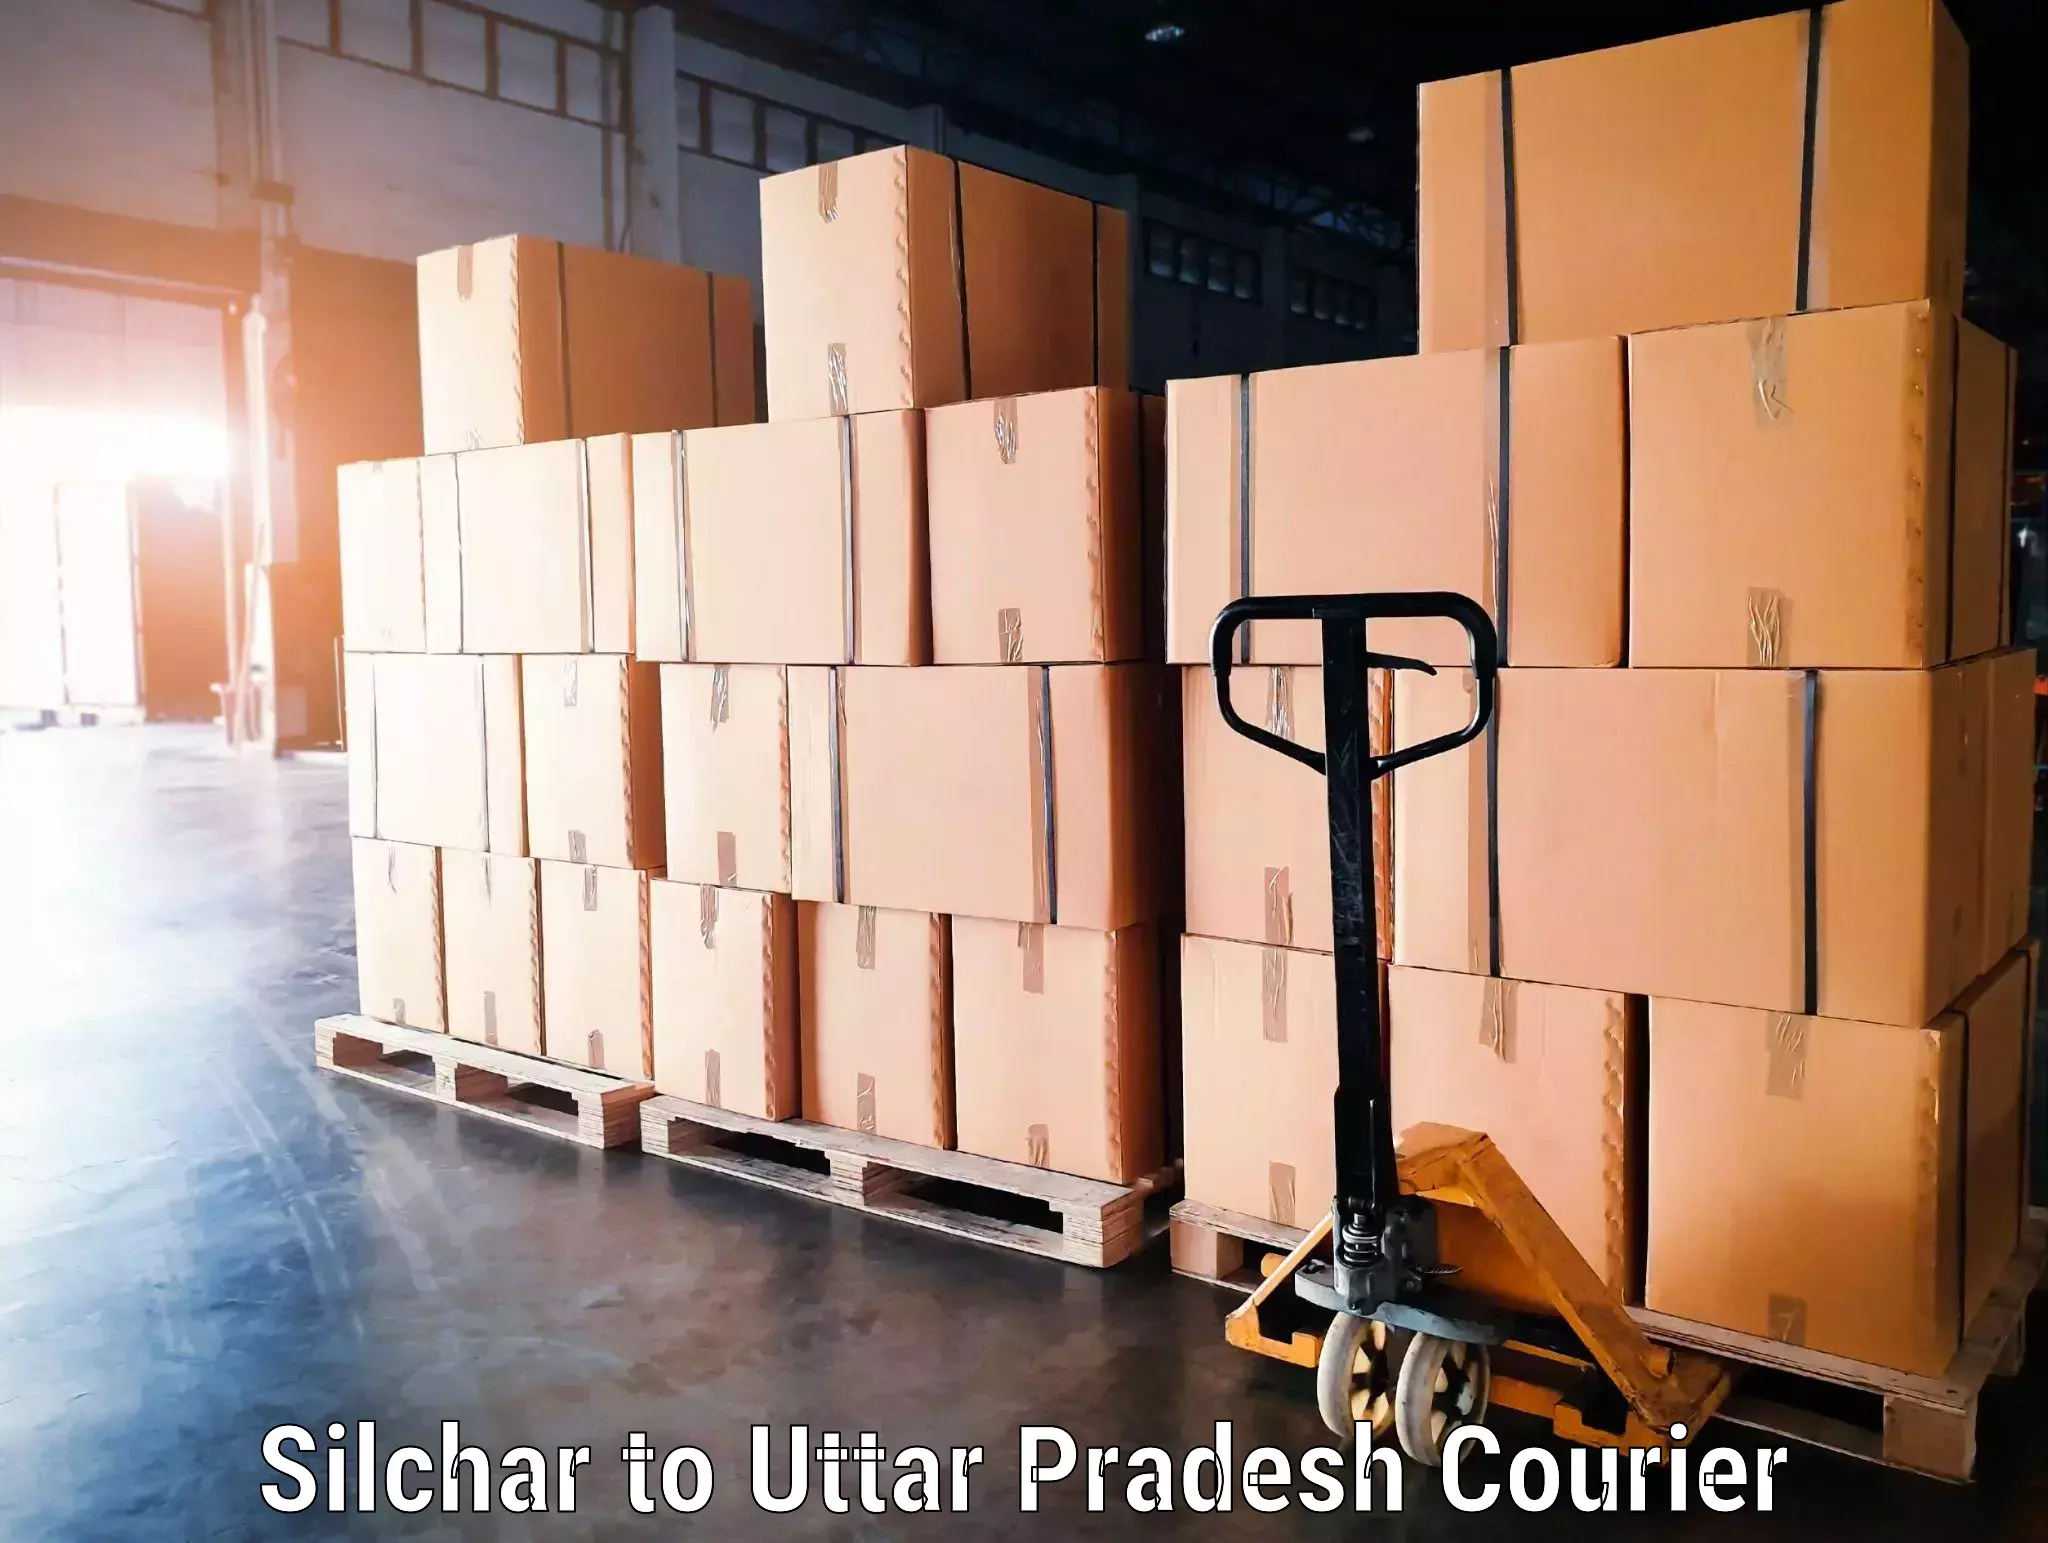 Baggage transport scheduler Silchar to Bisalpur